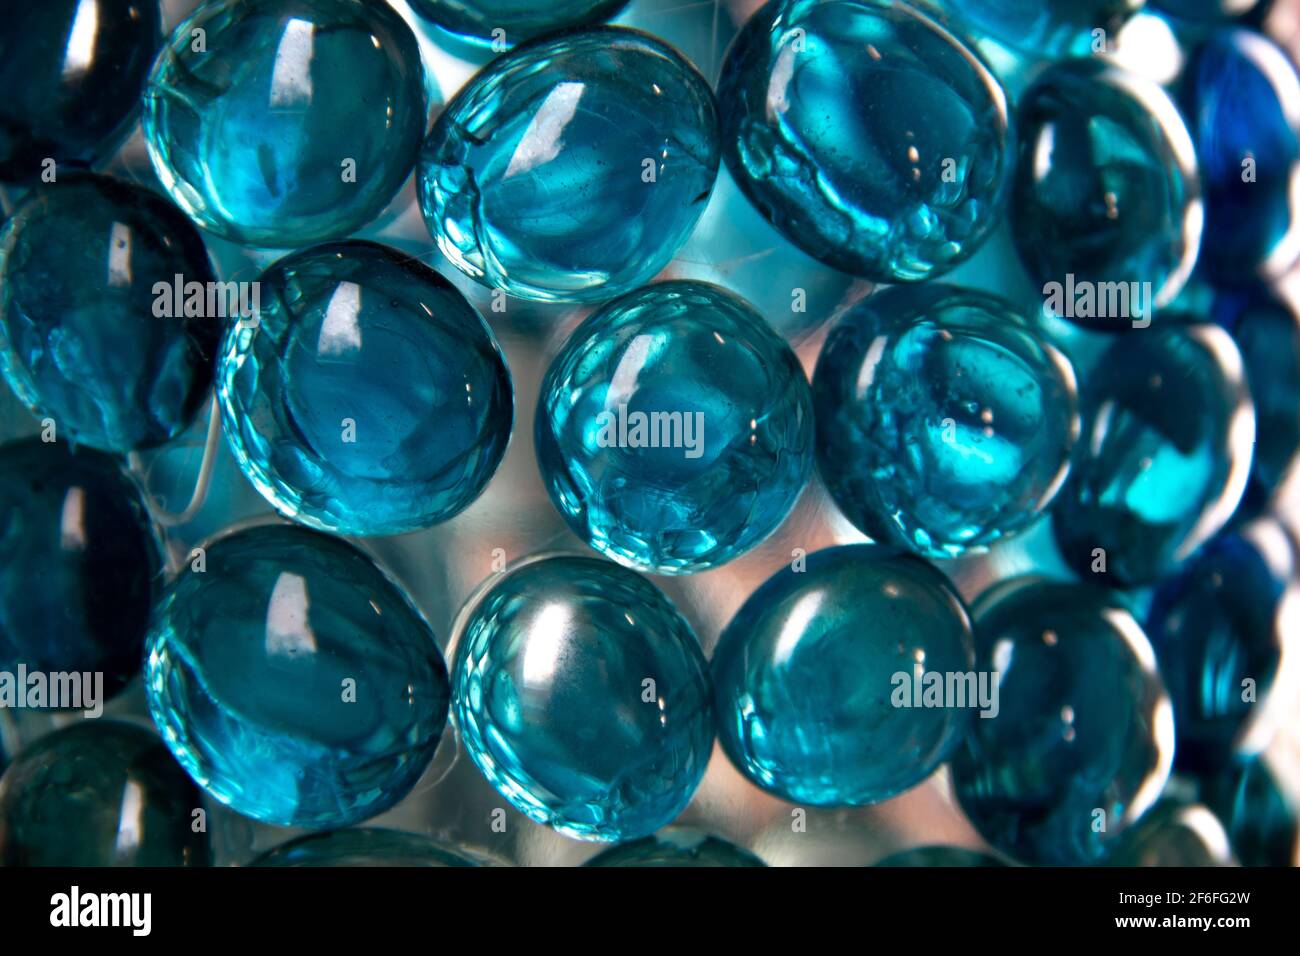 Les gouttelettes de verre bleu turquoise forment une texture semblable à une bulle sur une bouteille de vin réutilisée. Banque D'Images